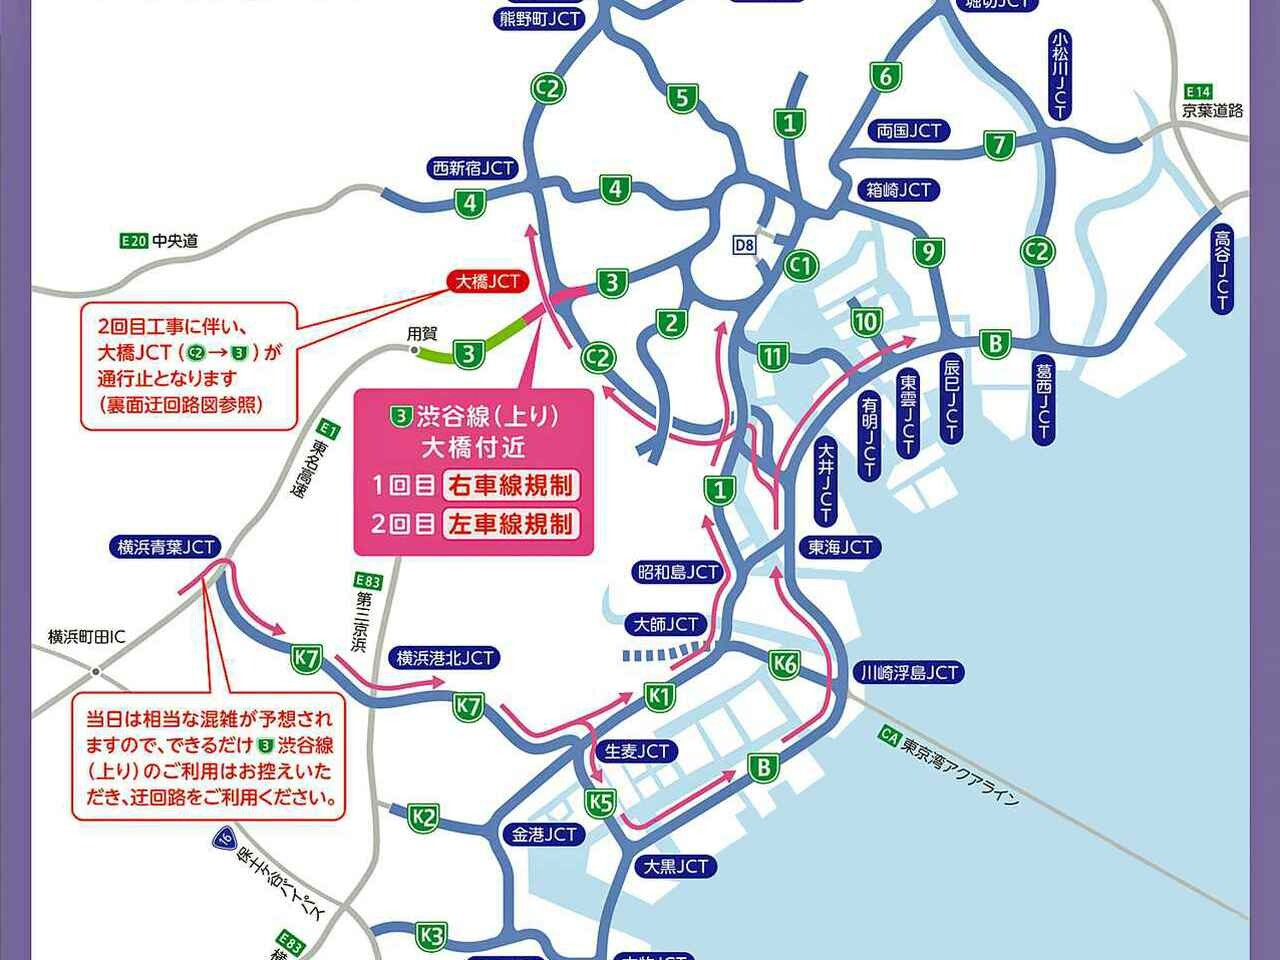 【高速道路情報】首都高3号渋谷線の大橋付近で24時間車線規制。2021年9月と10月に2回実施